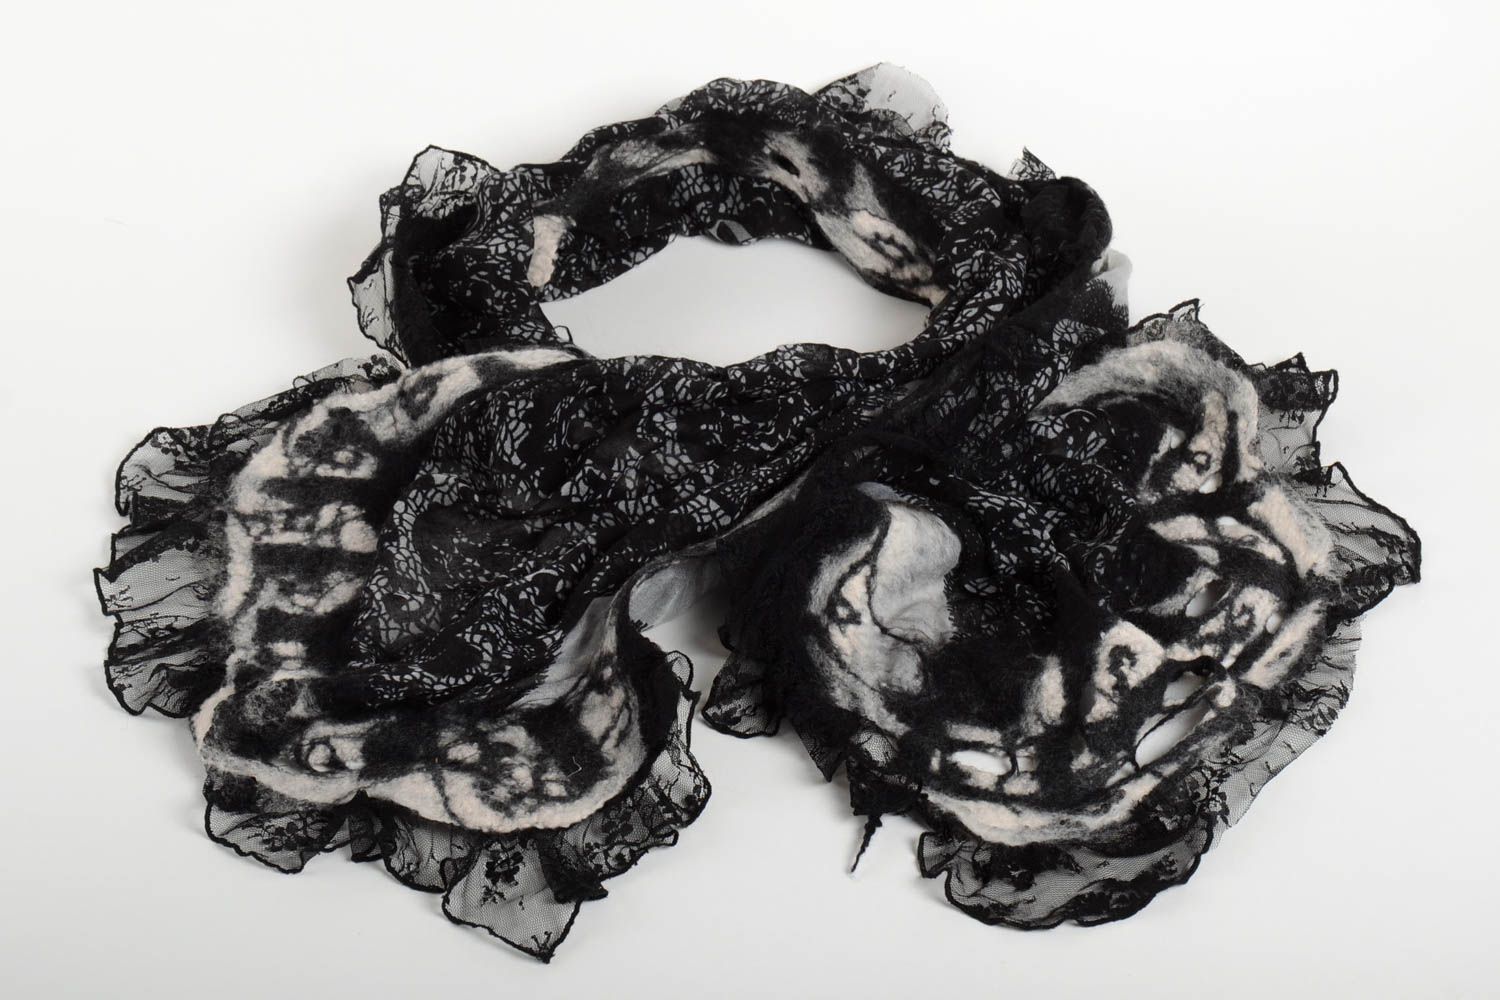 Handmade gefilzter Schal Frauen Accessoire Damen Wollschal schwarz weiß foto 1